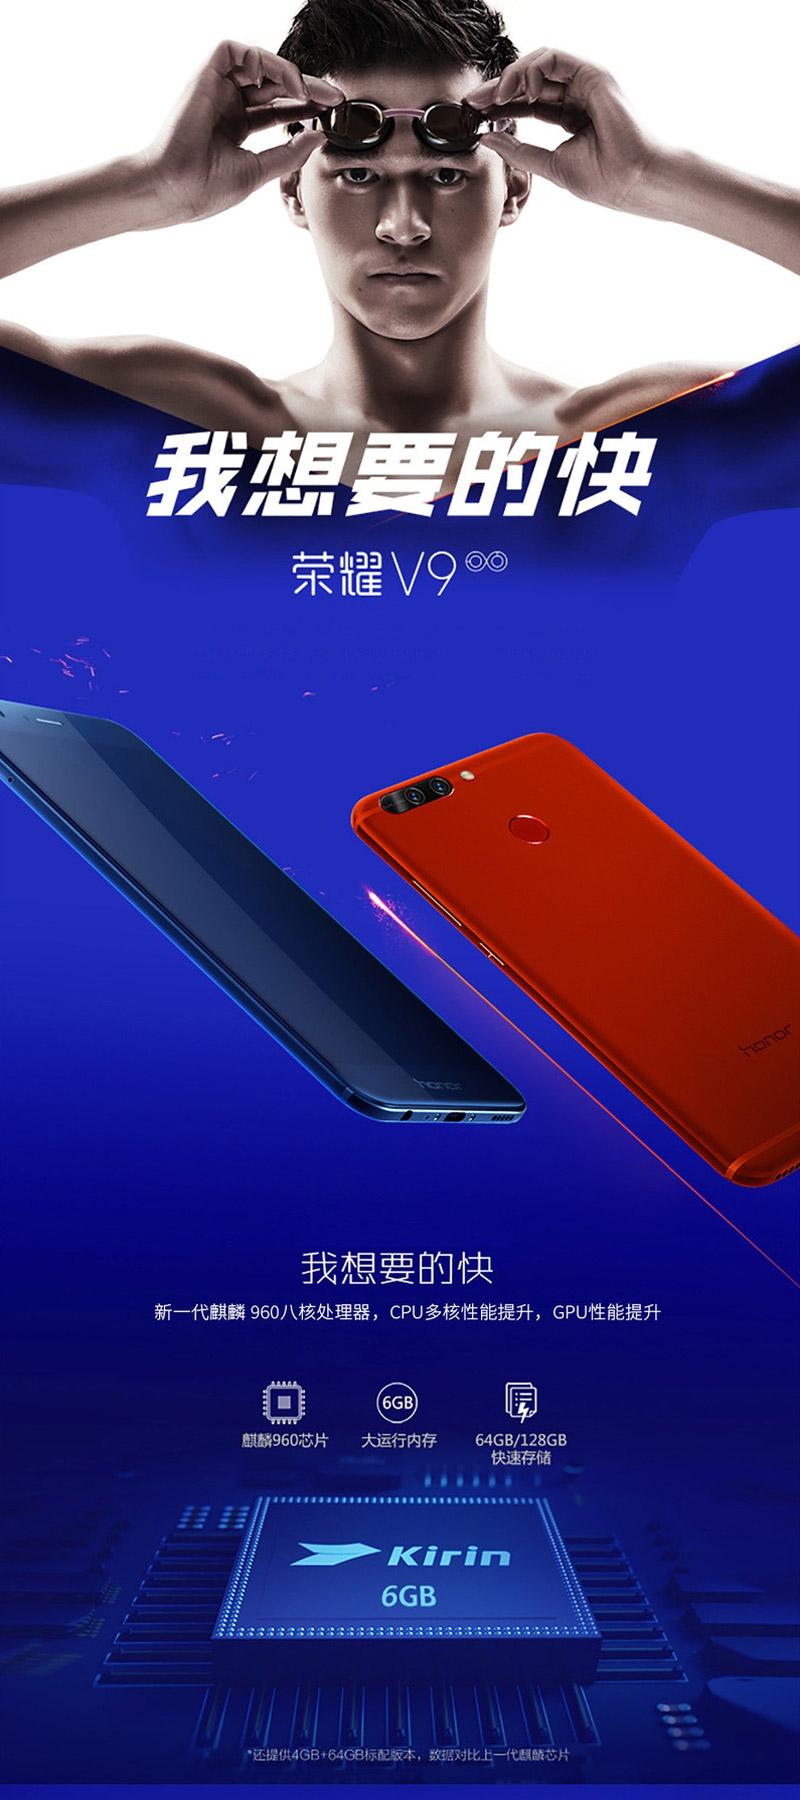 【包邮】荣耀V9 手机 全网通4G(6G RAM+64G ROM)标配 极光蓝